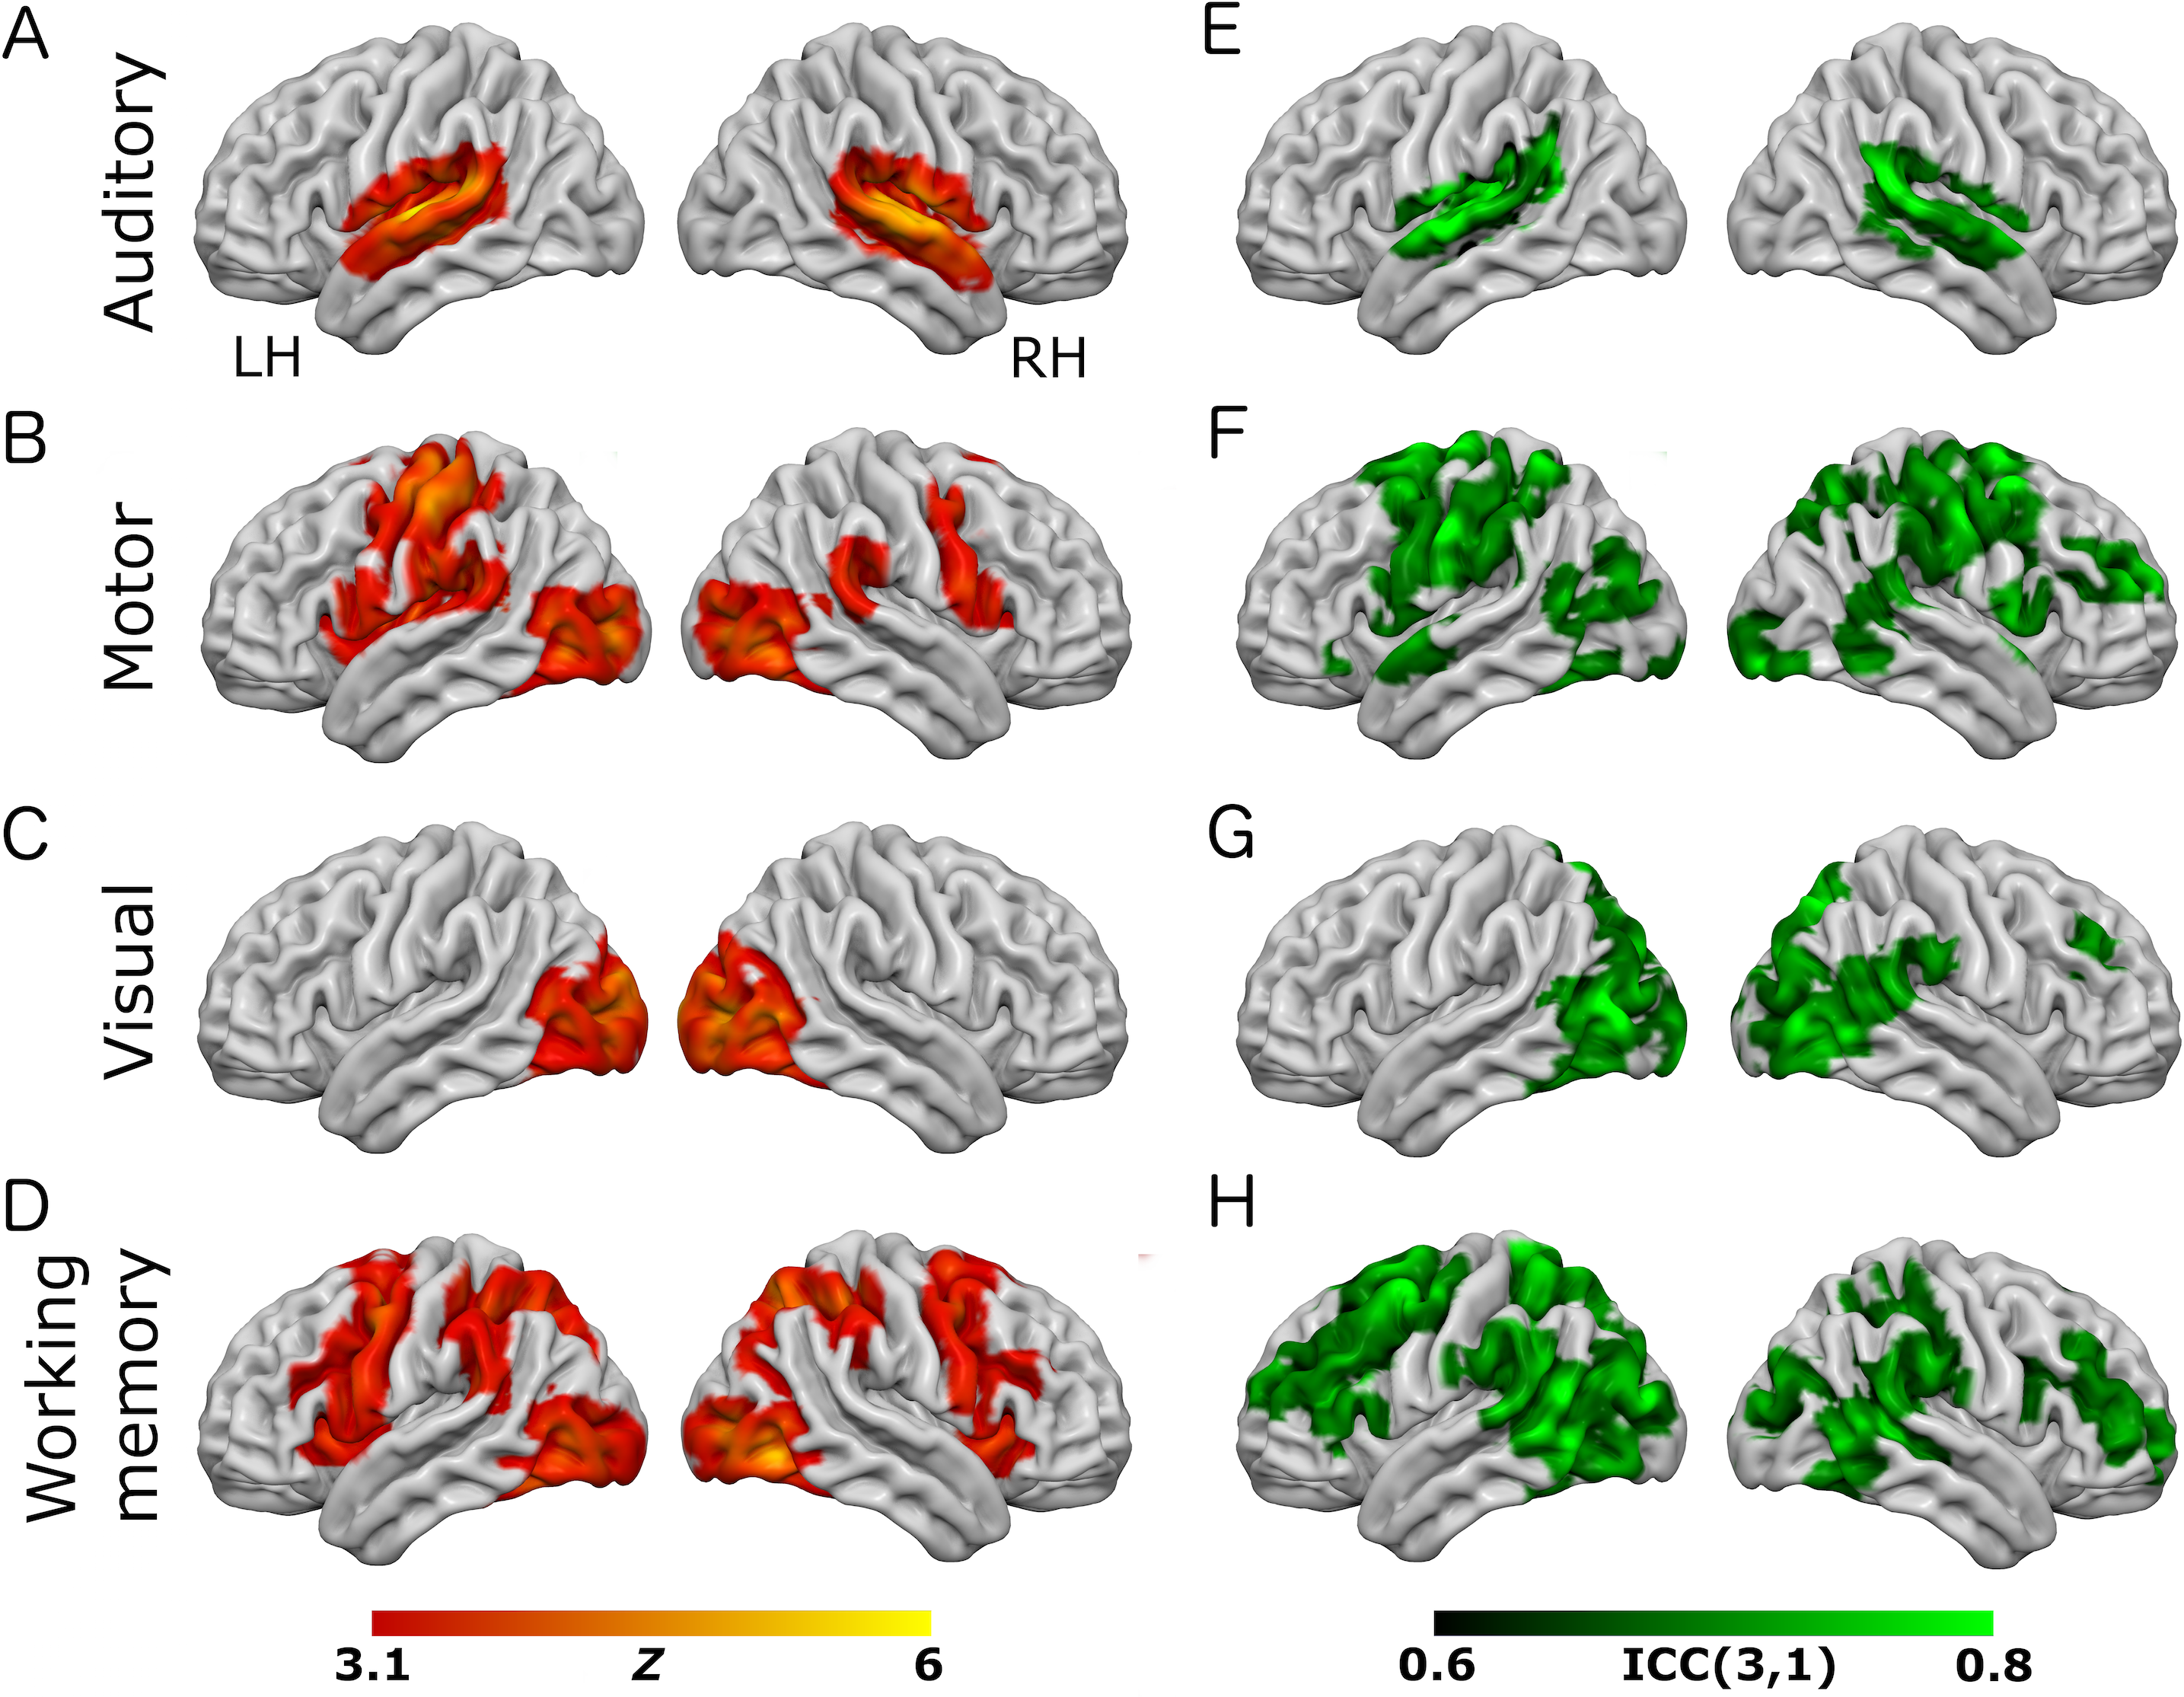 ubemandede automatisk Ekspert A short, robust brain activation control task optimised for pharmacological  fMRI studies [PeerJ]